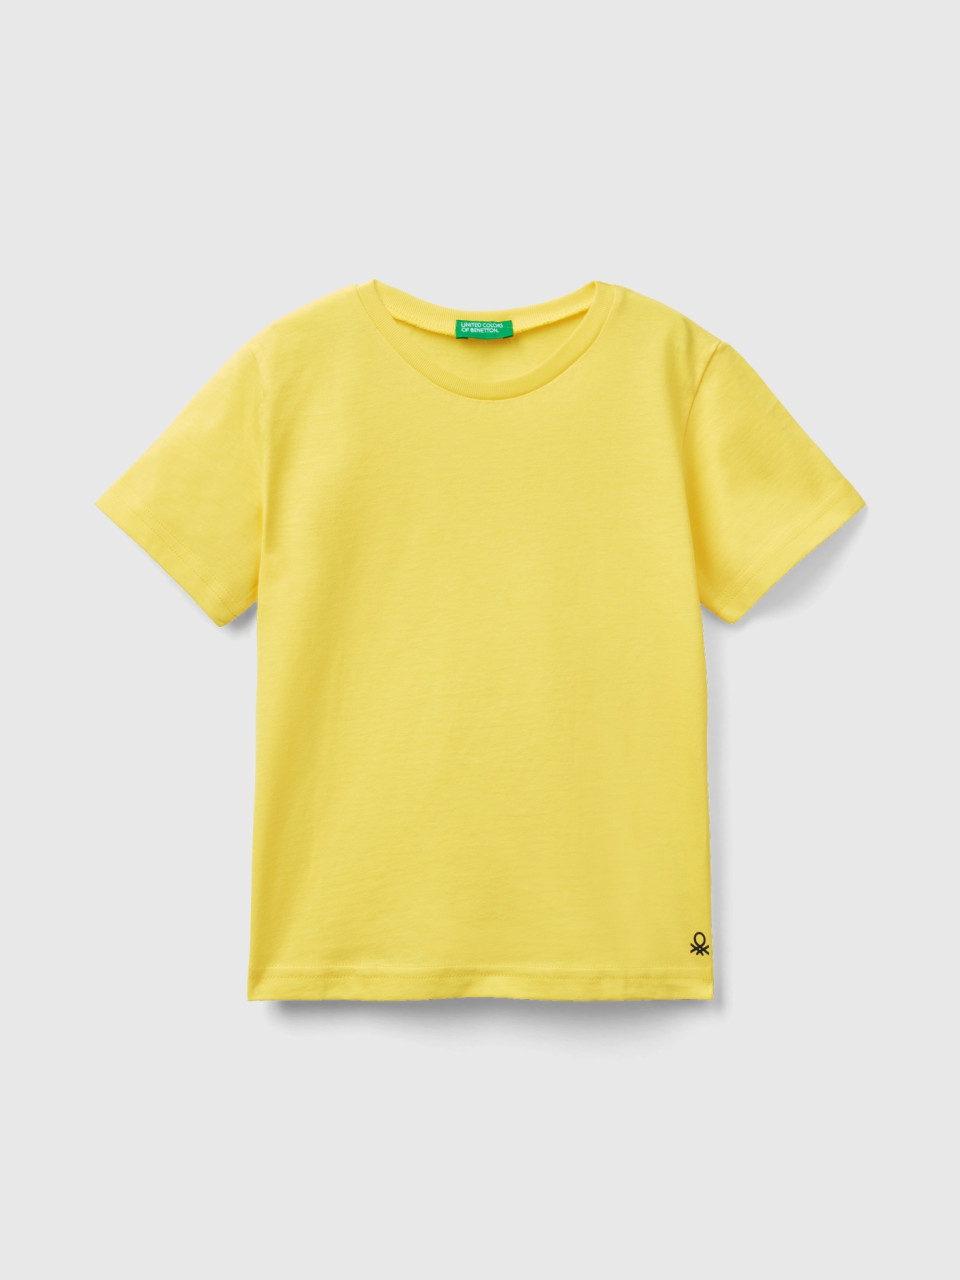 Benetton, T-shirt Em Algodão Orgânico, Amarelo, Crianças